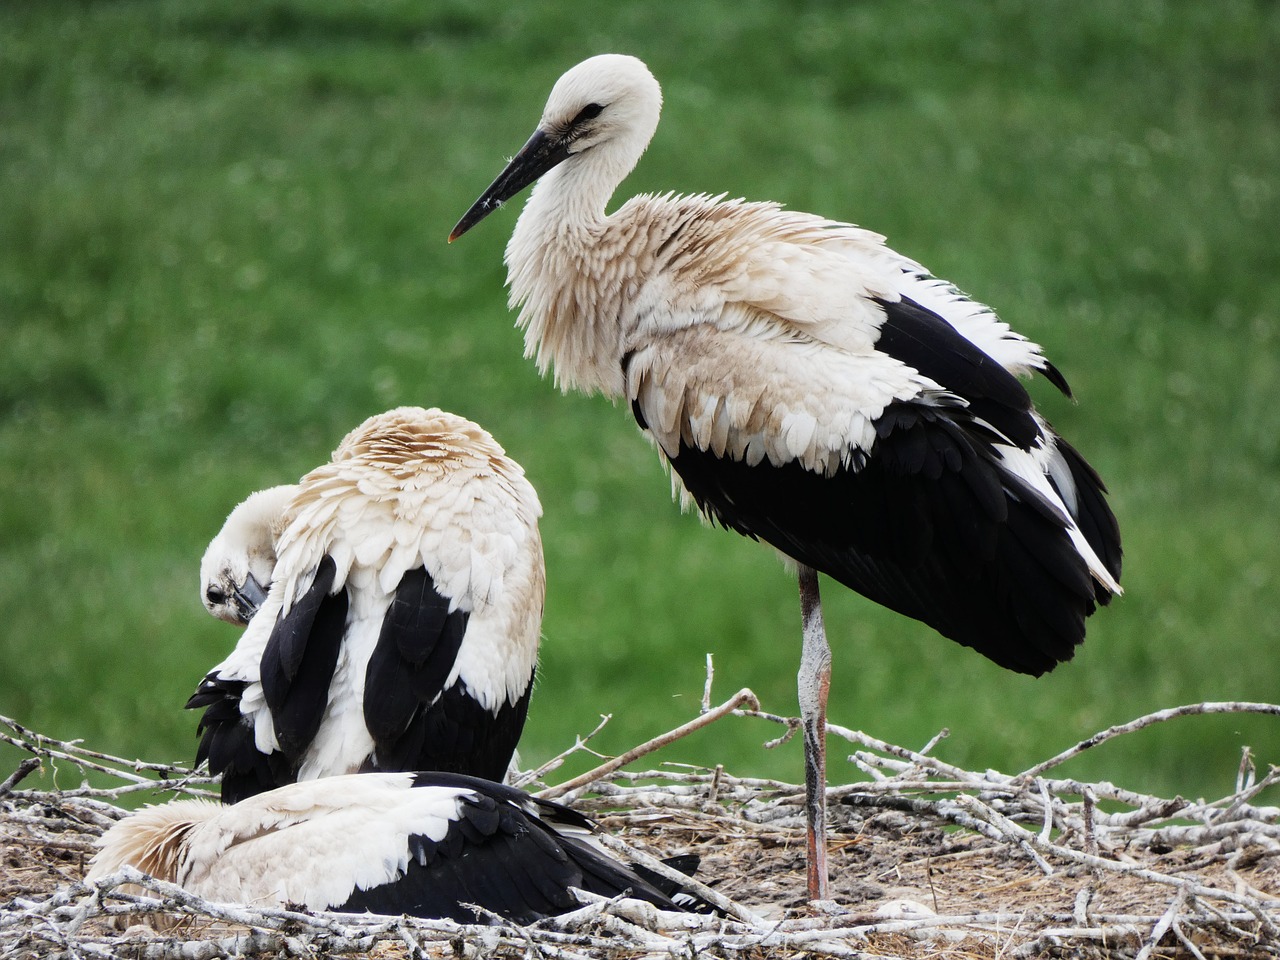 storks nest storchennest free photo